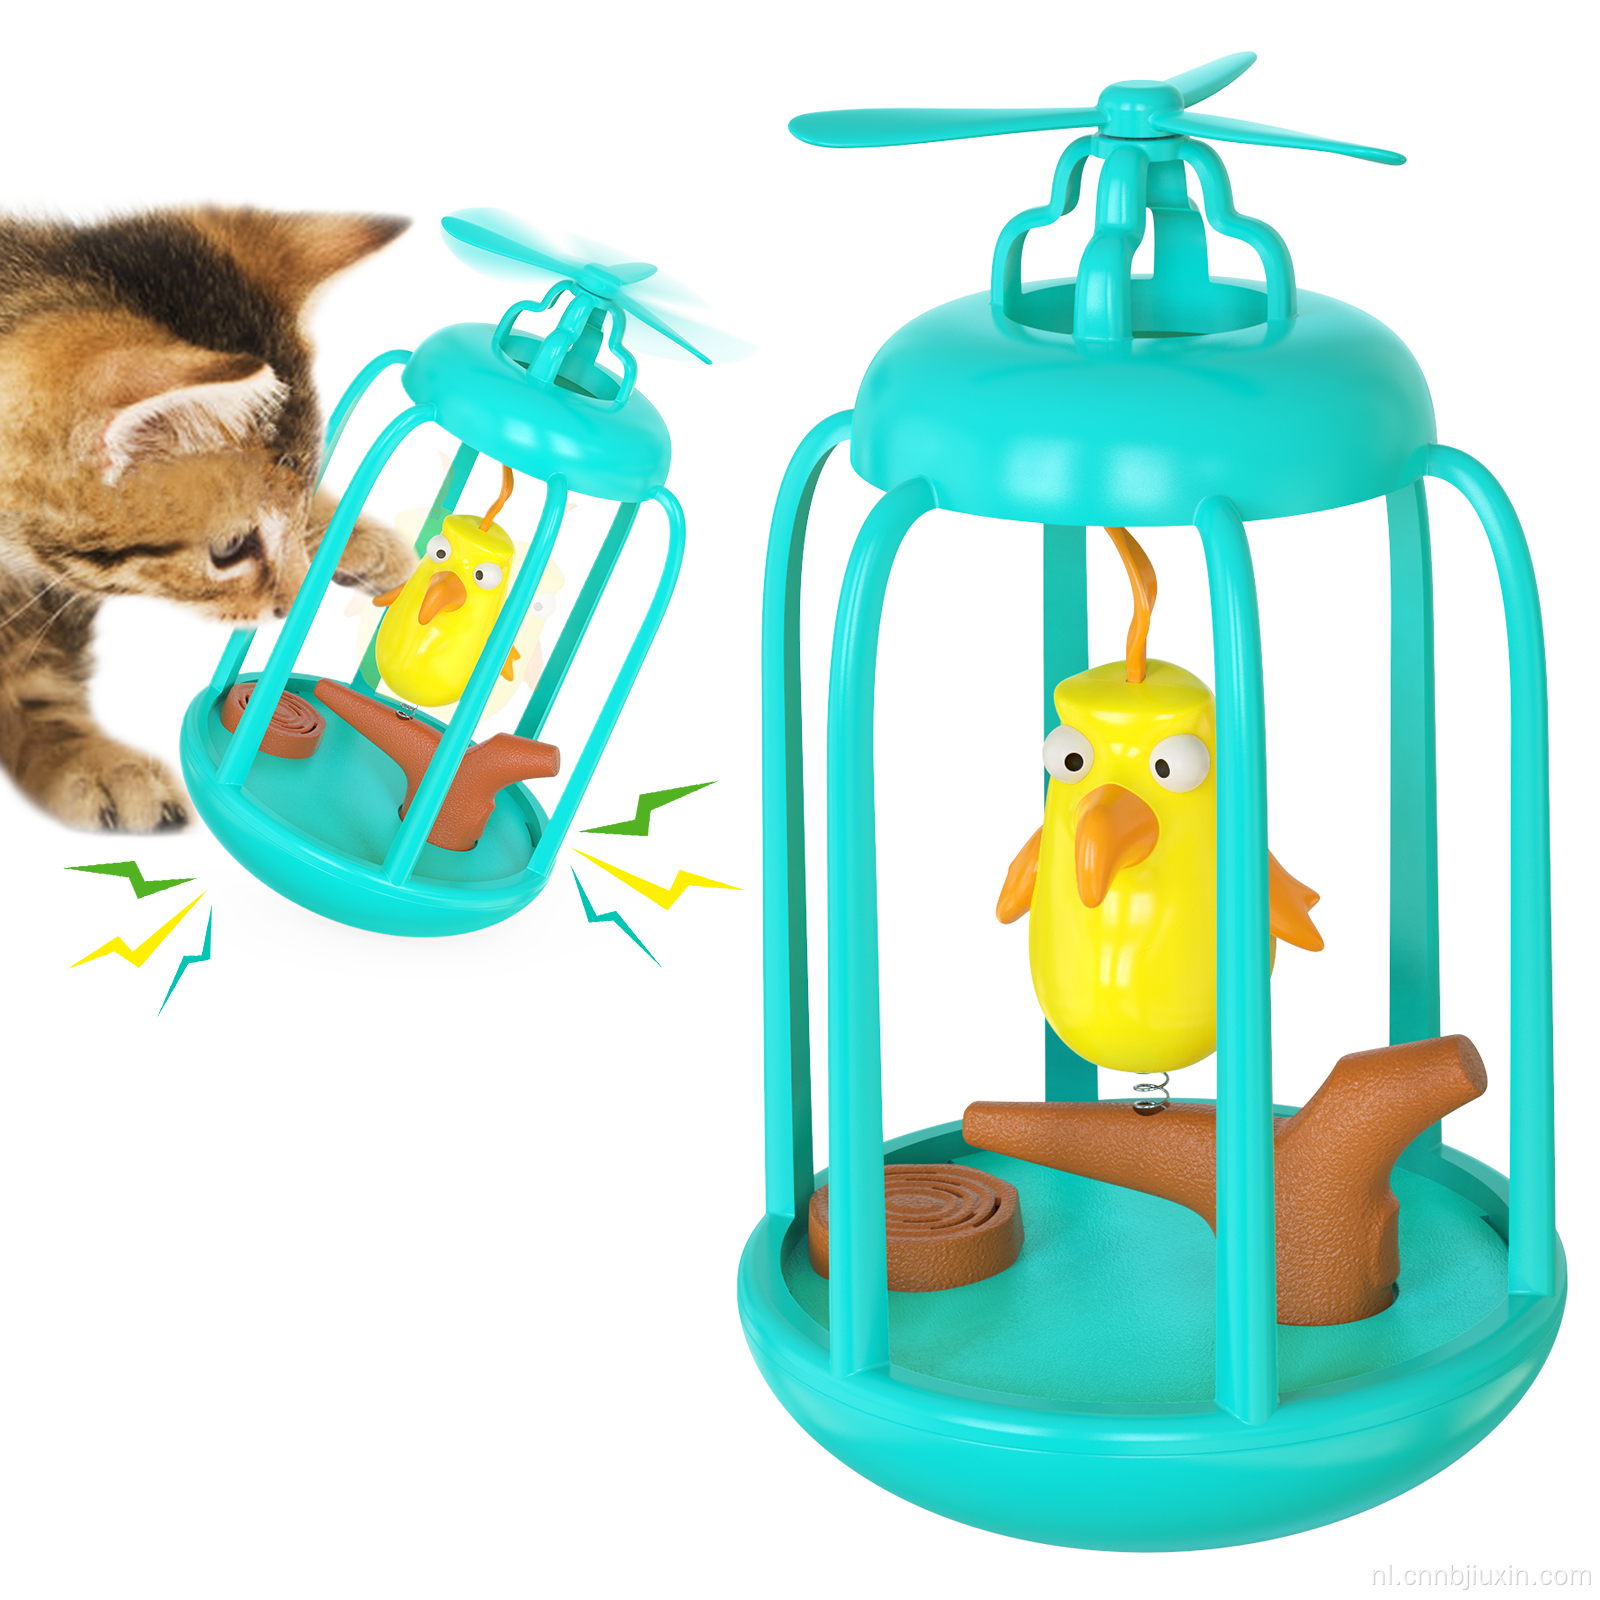 Pet Interactive Keep Fit Smart Toy met Birdvoice